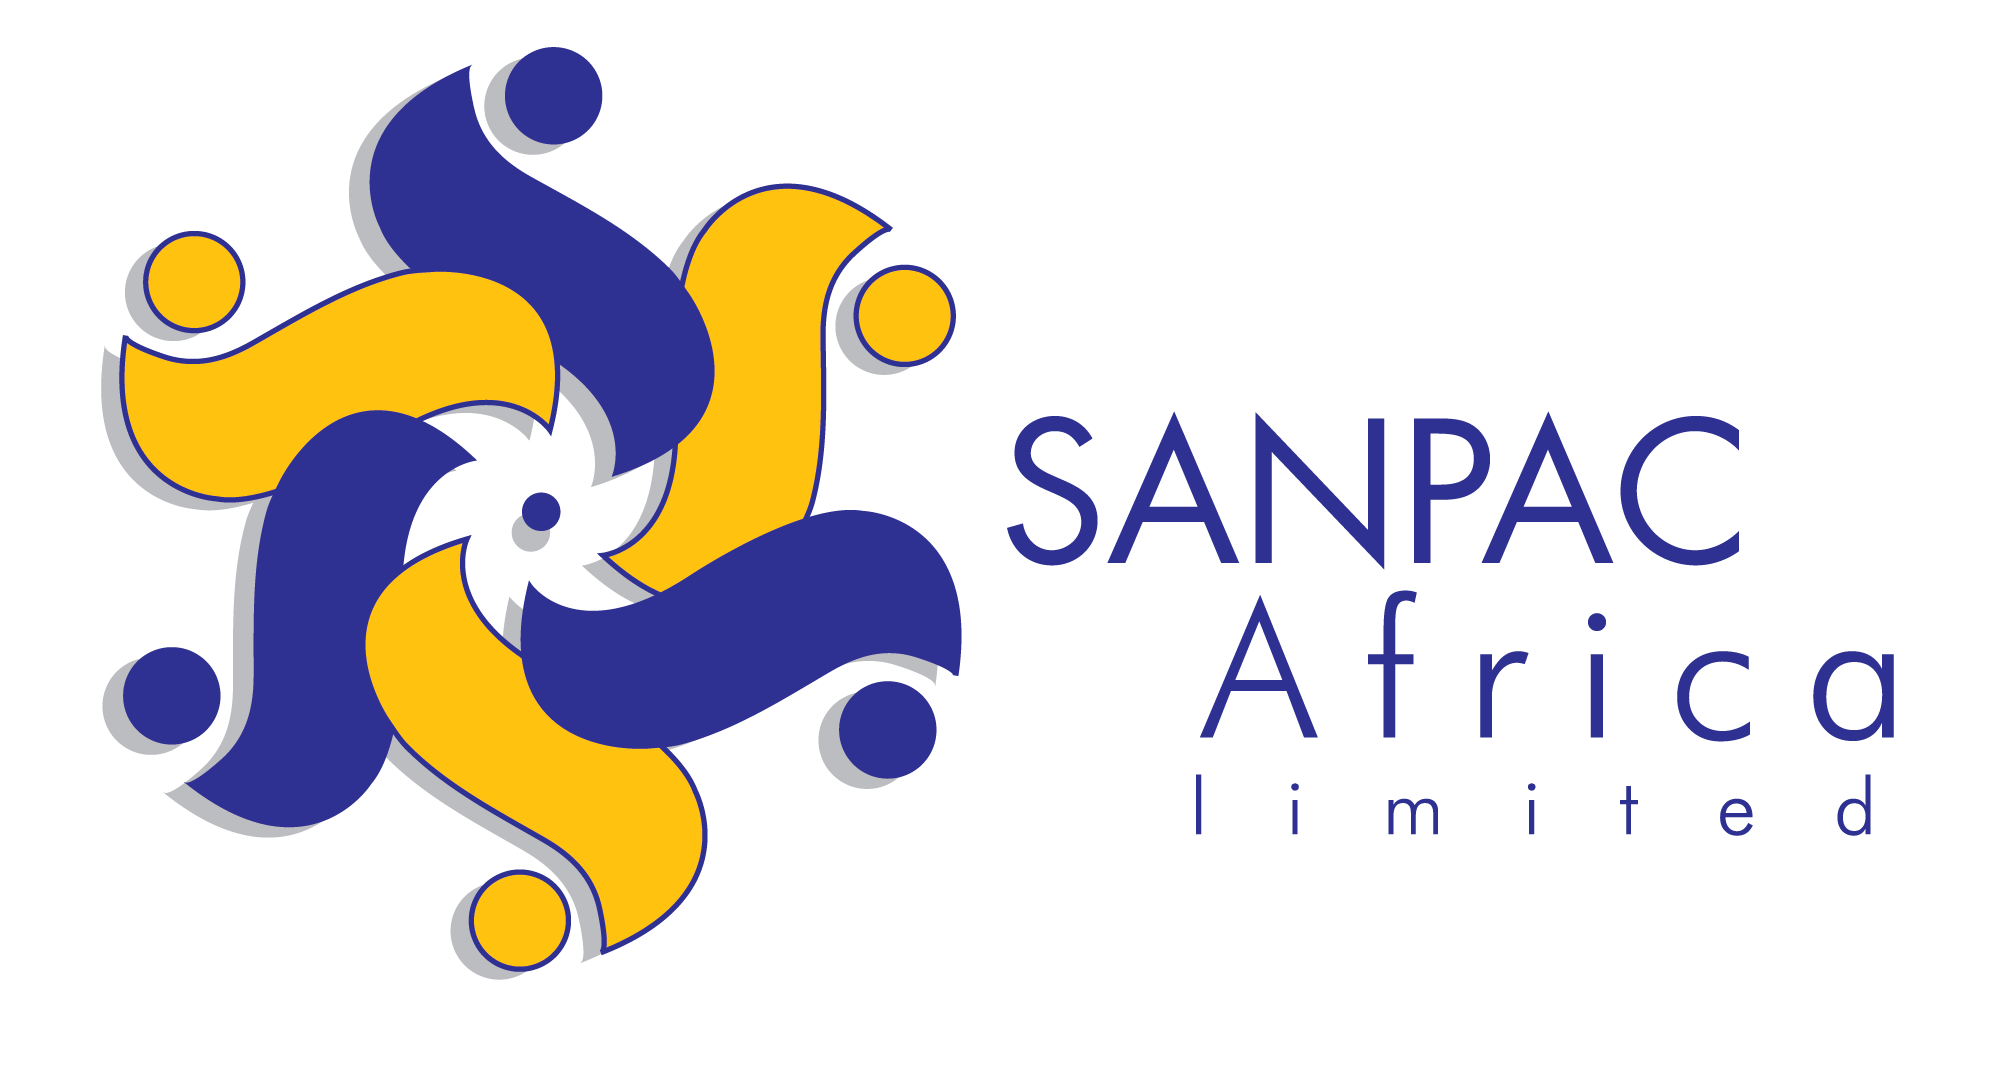 Sanpac